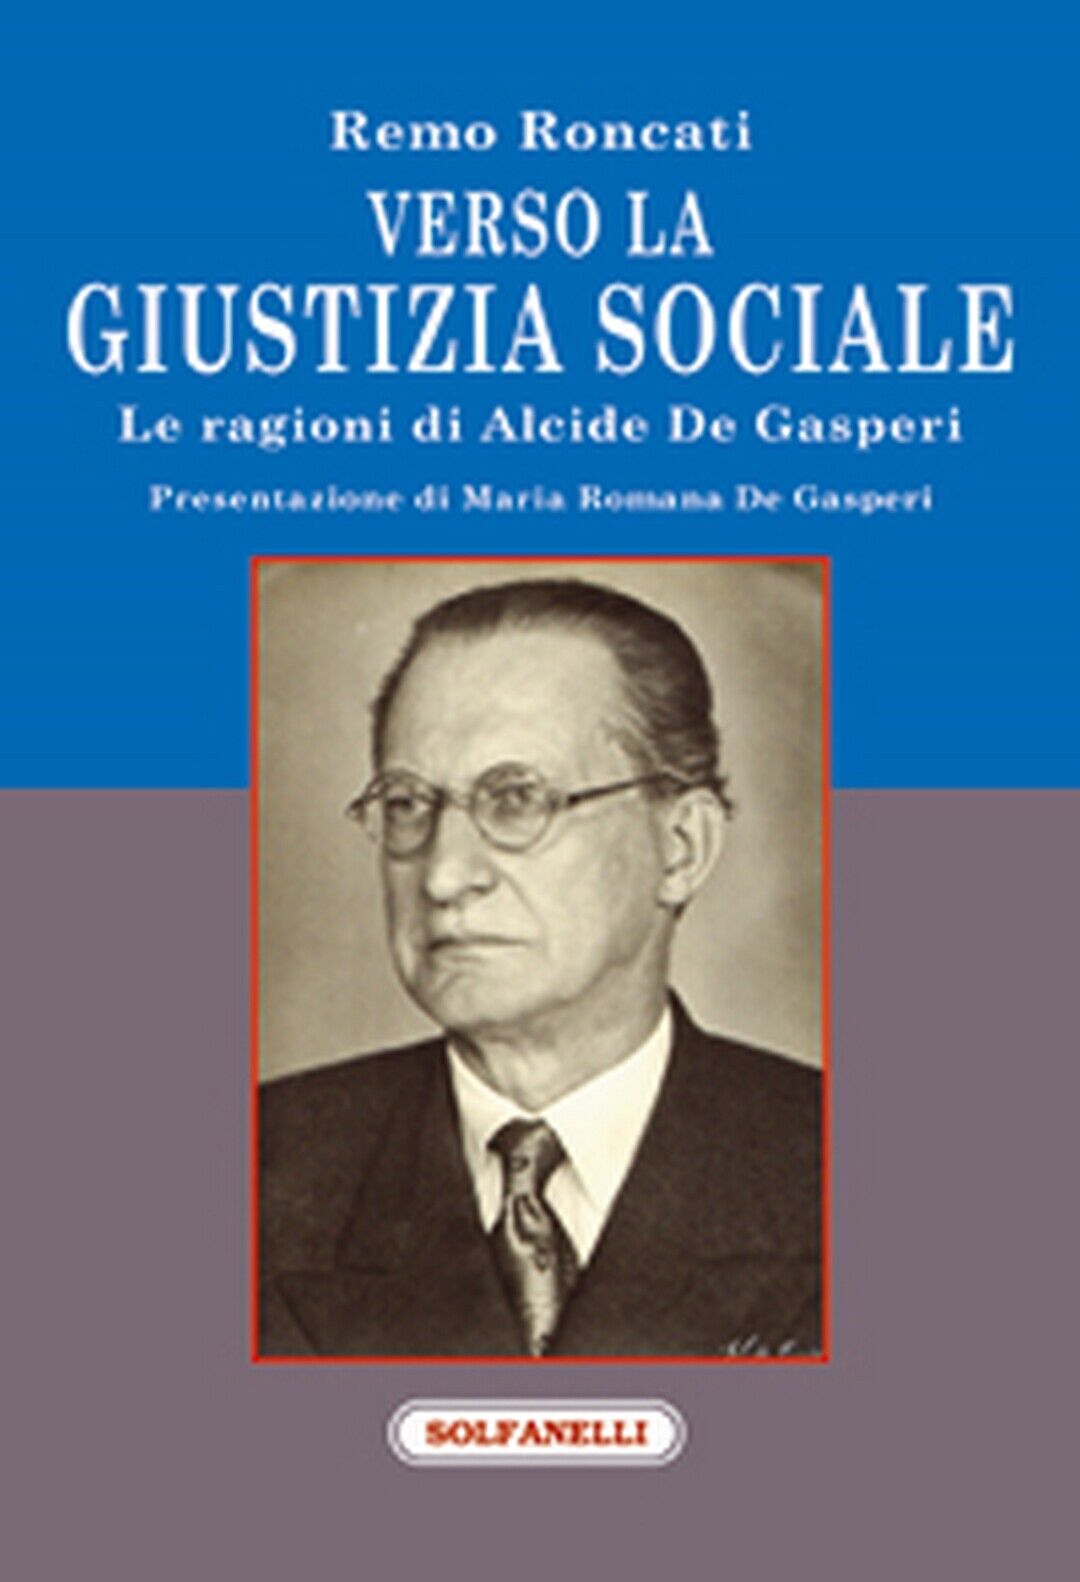 VERSO LA GIUSTIZIA SOCIALE Le ragioni di Alcide De Gasperi  di Remo Roncati